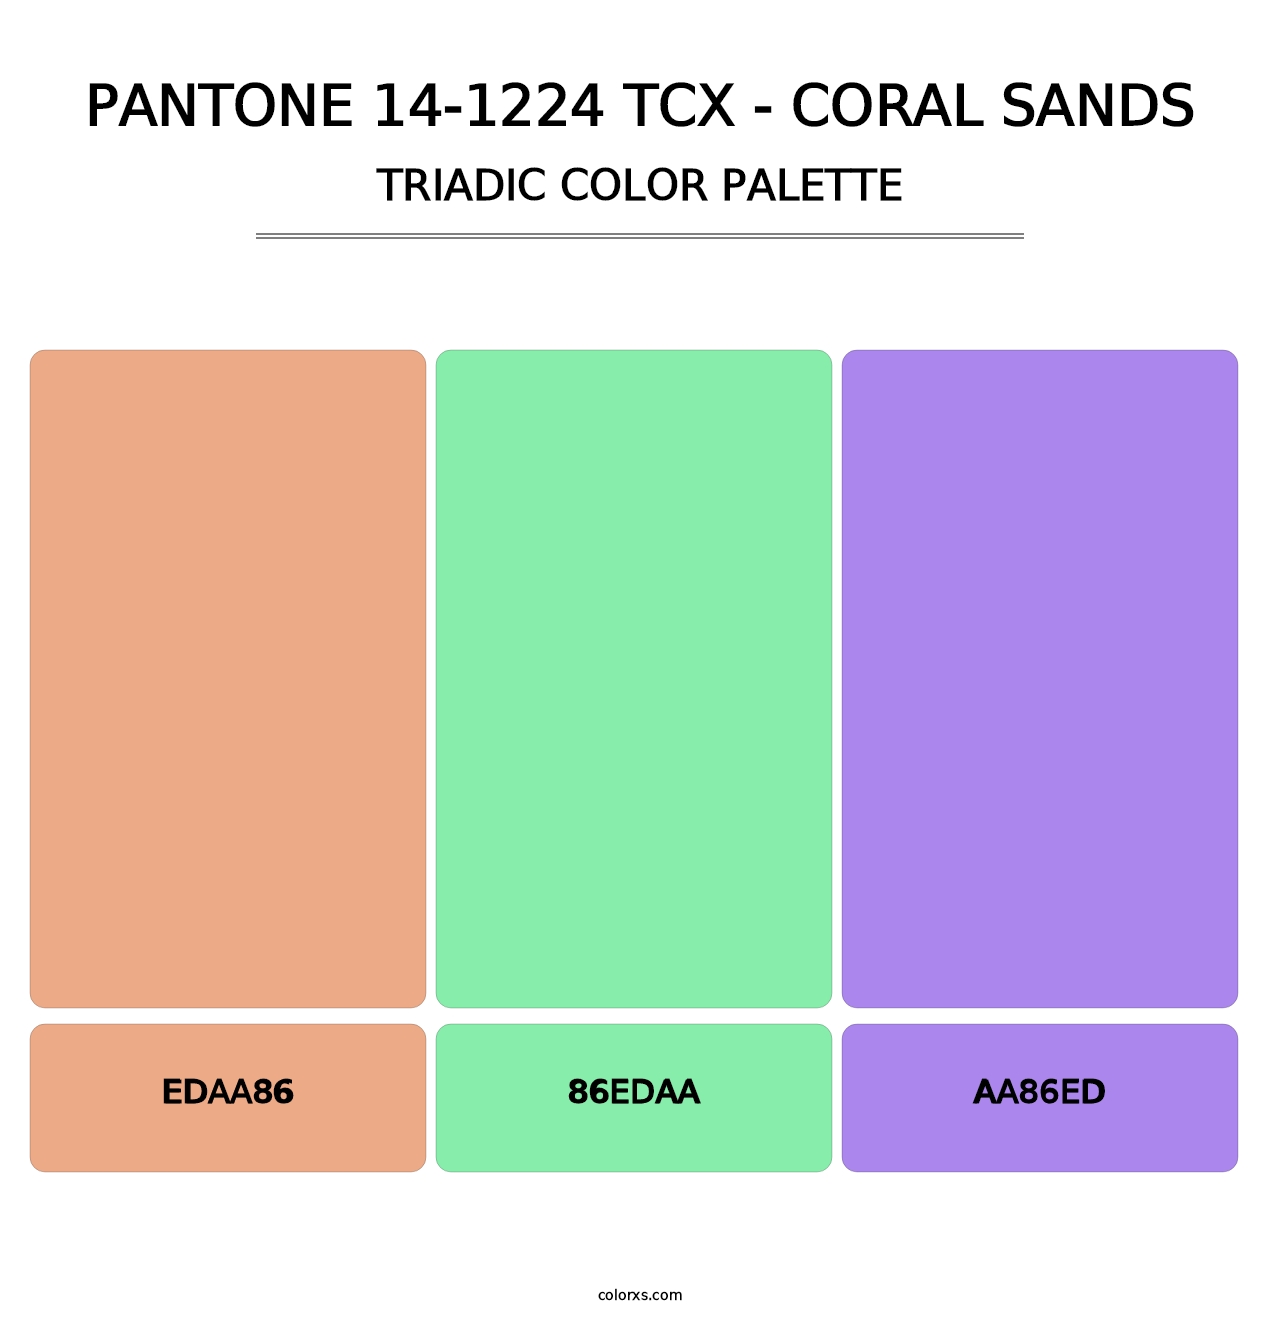 PANTONE 14-1224 TCX - Coral Sands - Triadic Color Palette